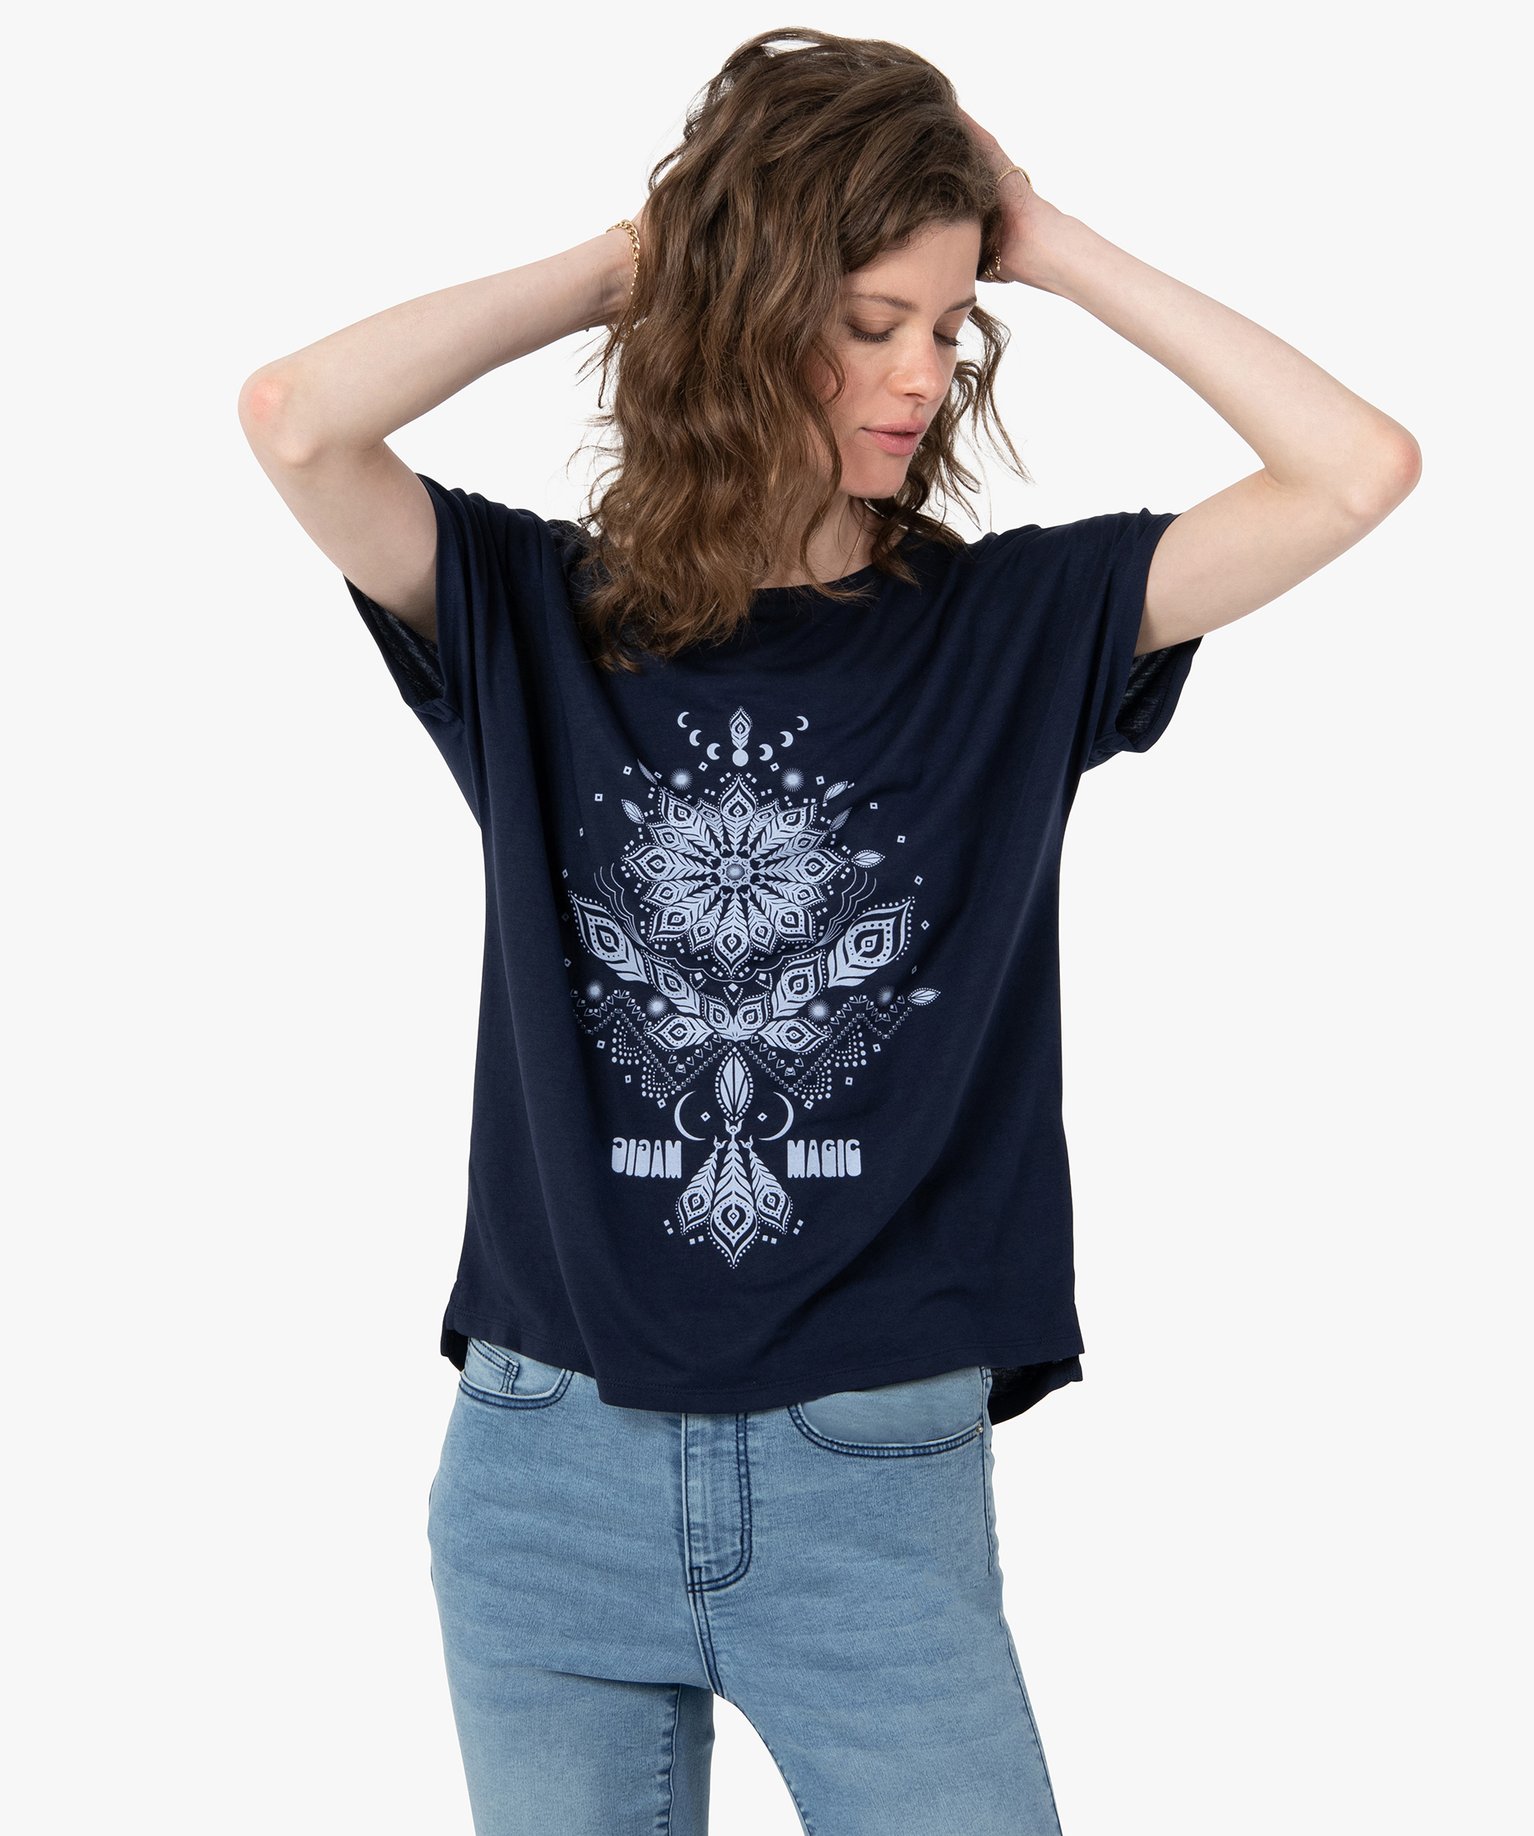 tee-shirt femme a manches courtes imprime coupe loose bleu t-shirts manches courtes